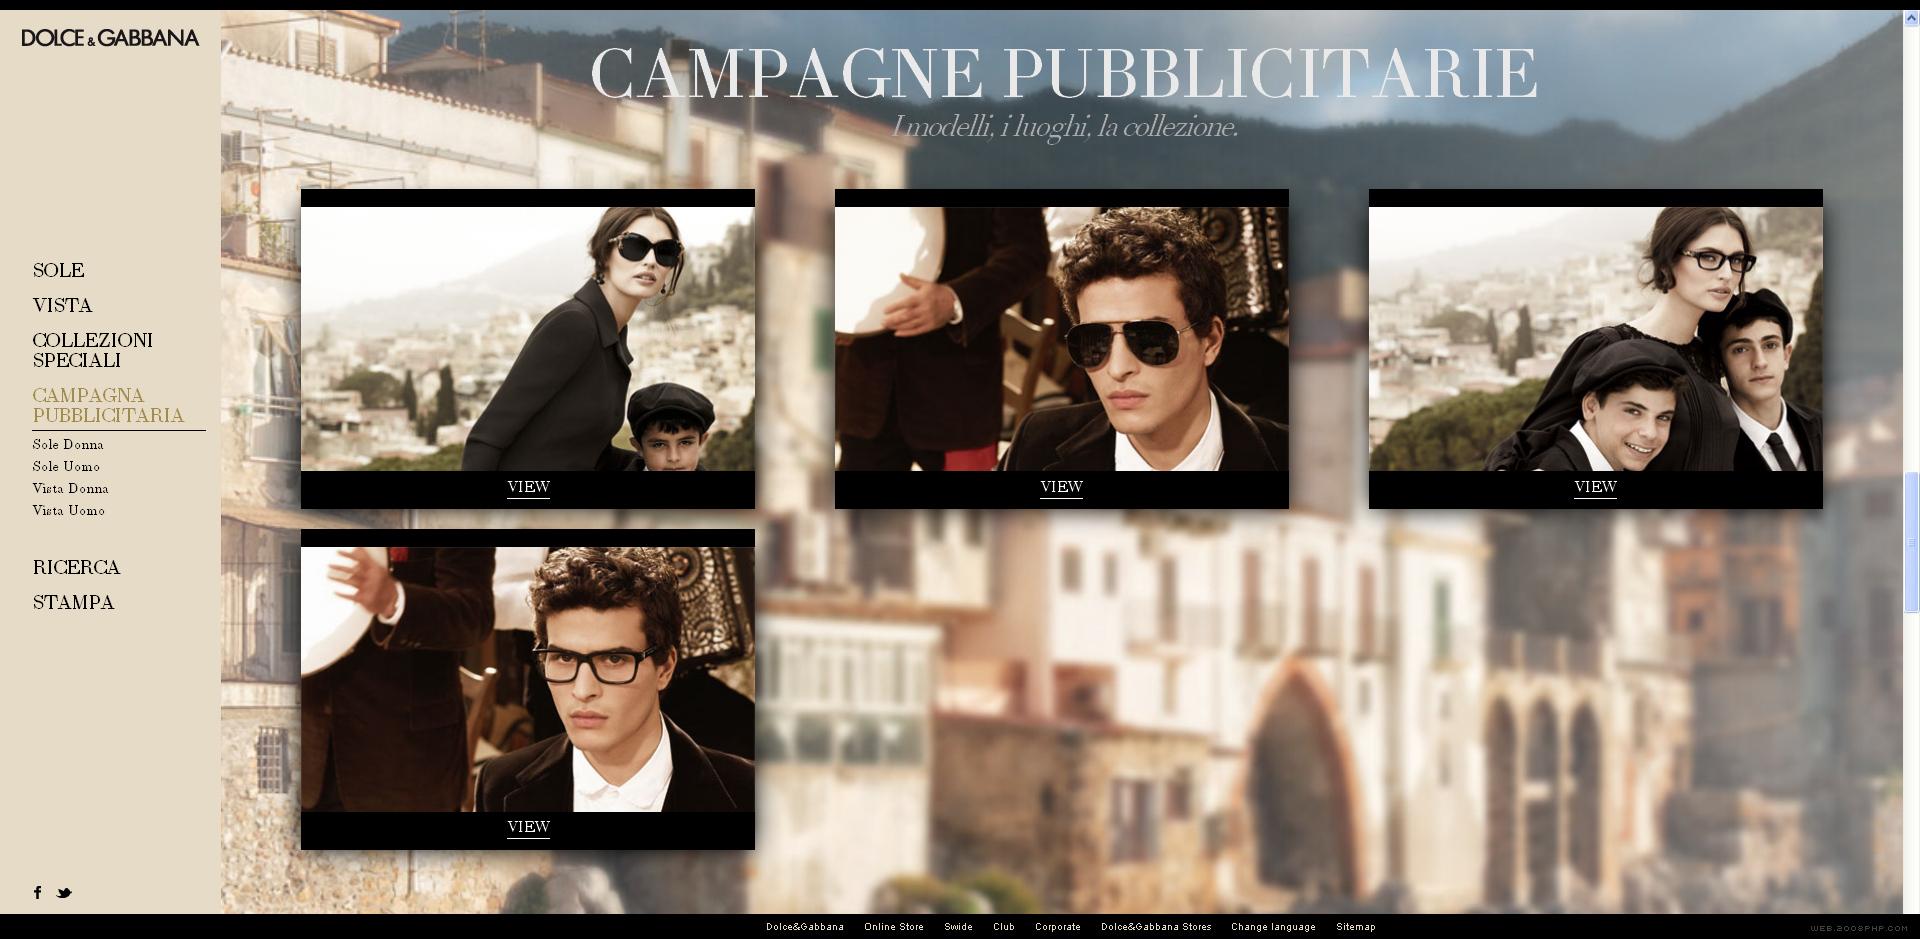 意大利杜嘉班纳时尚眼镜产品展示官方网站!